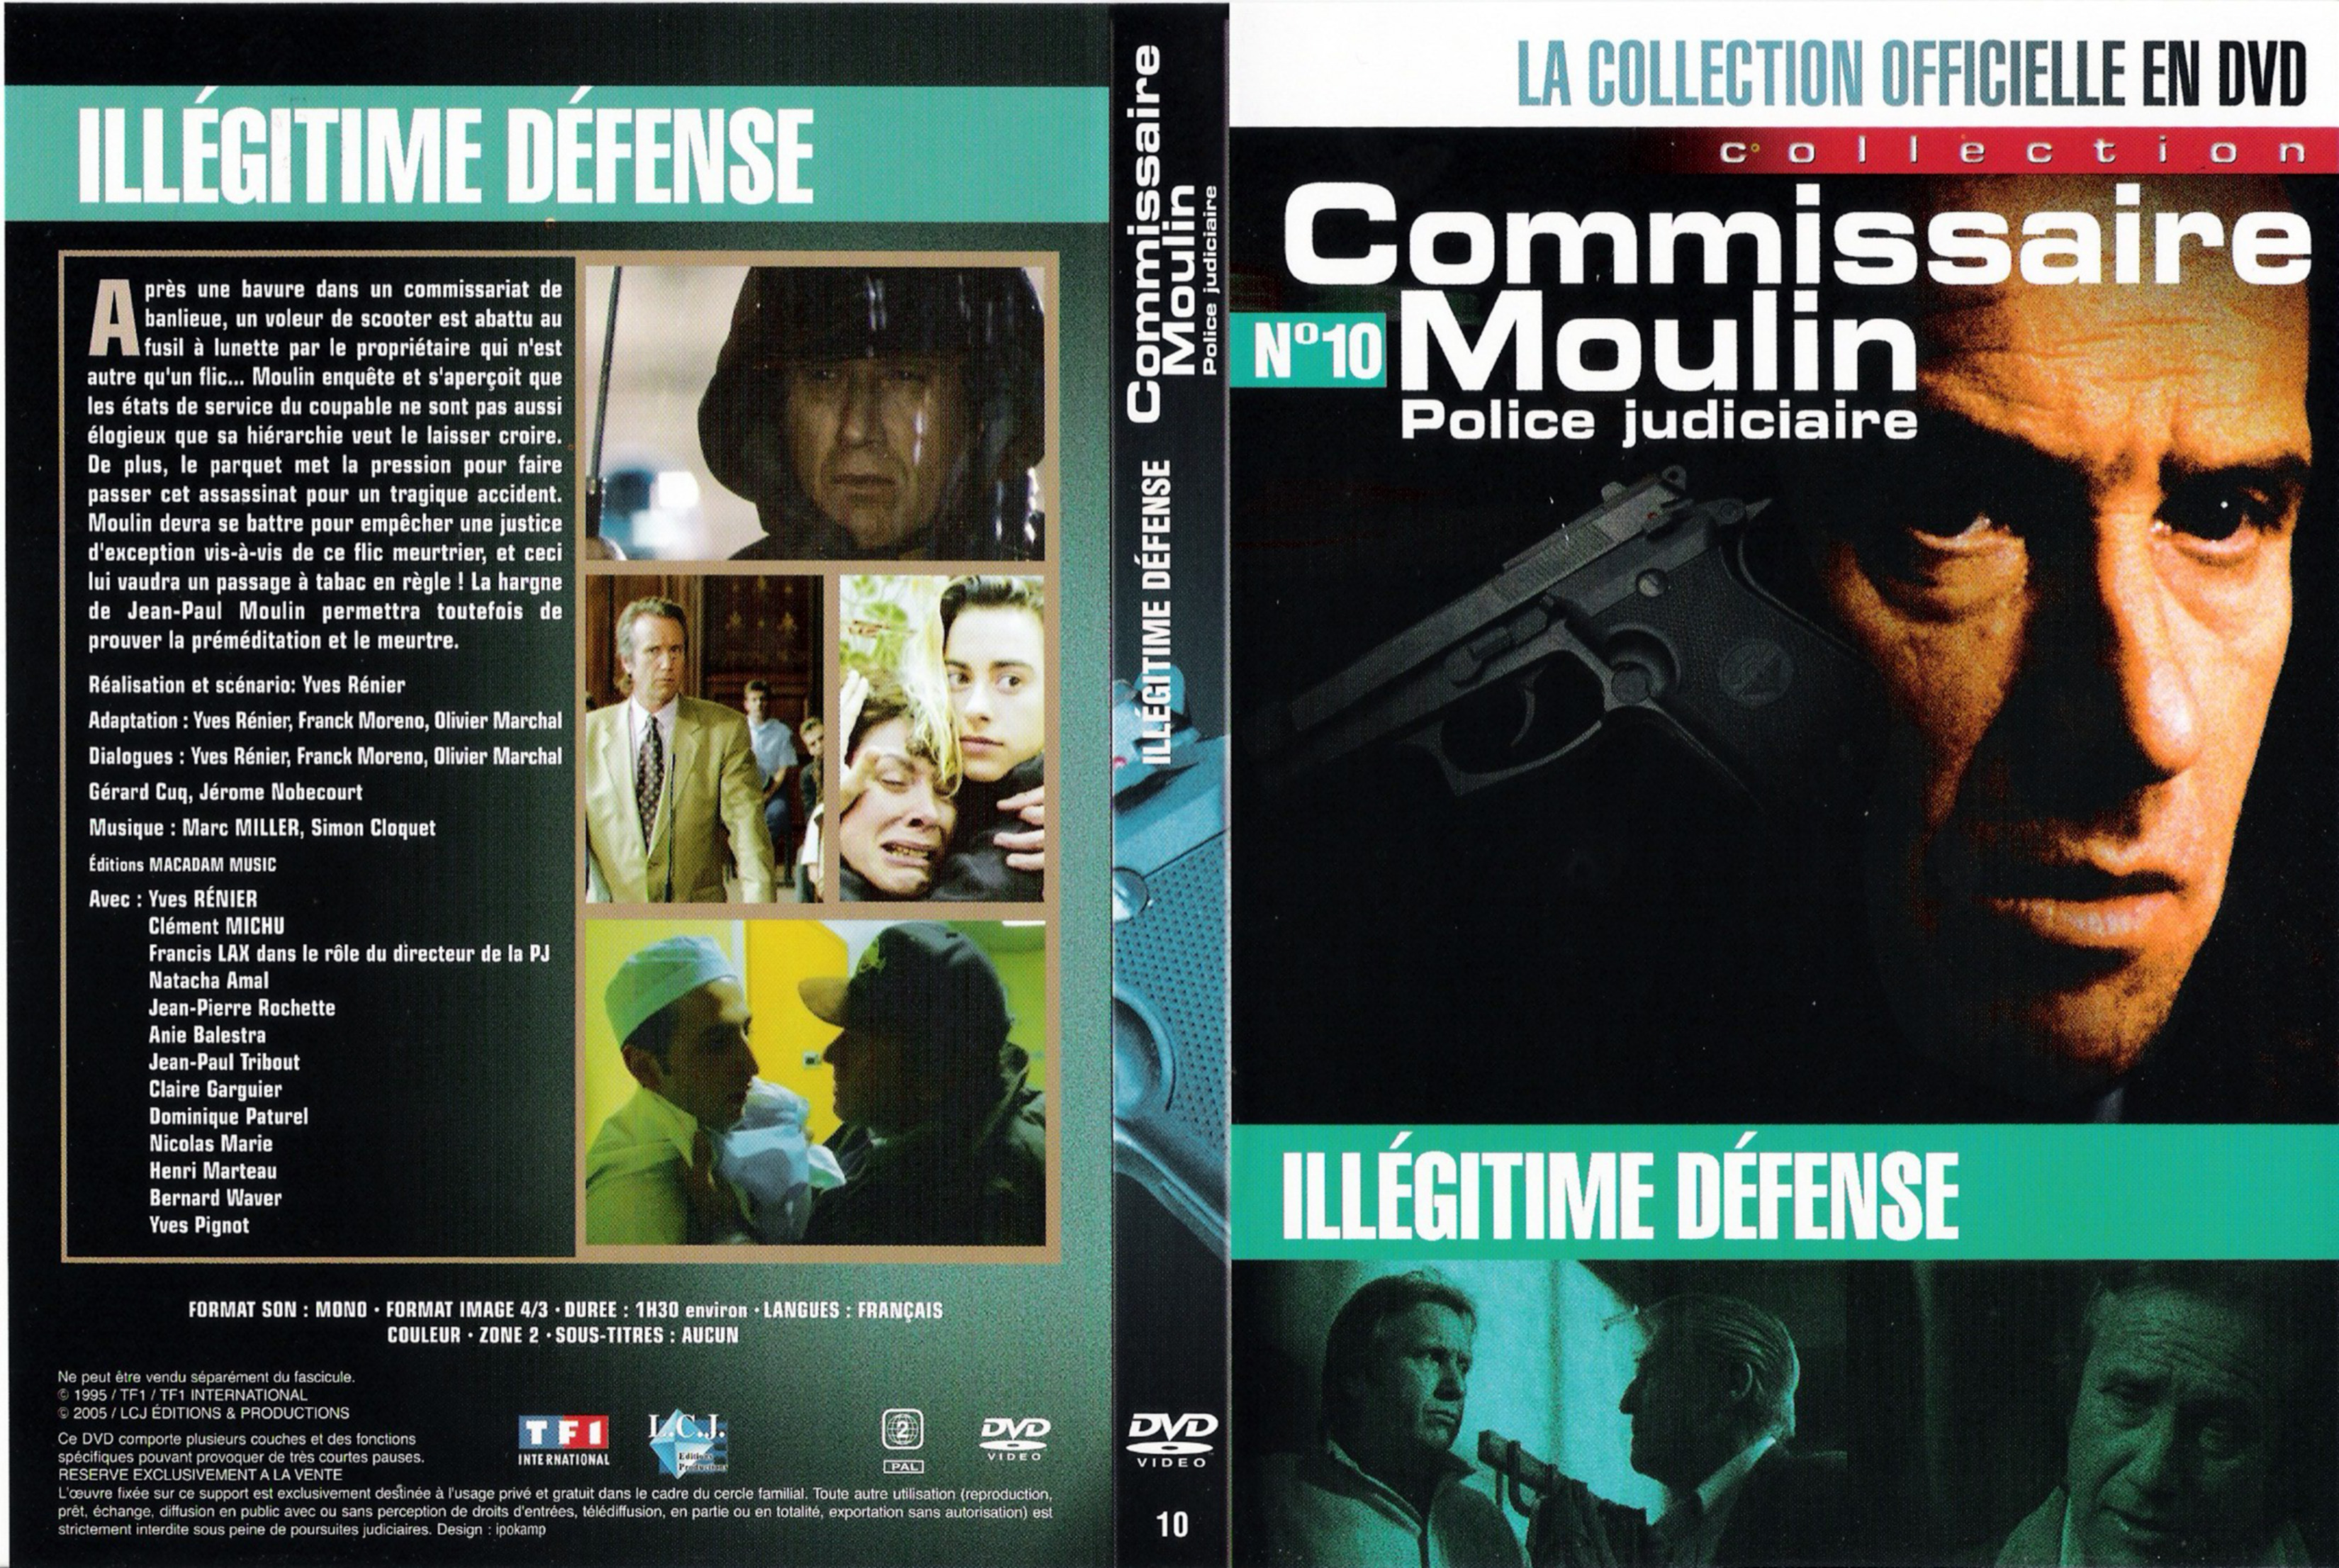 Jaquette DVD Commissaire Moulin - Illgitime dfense